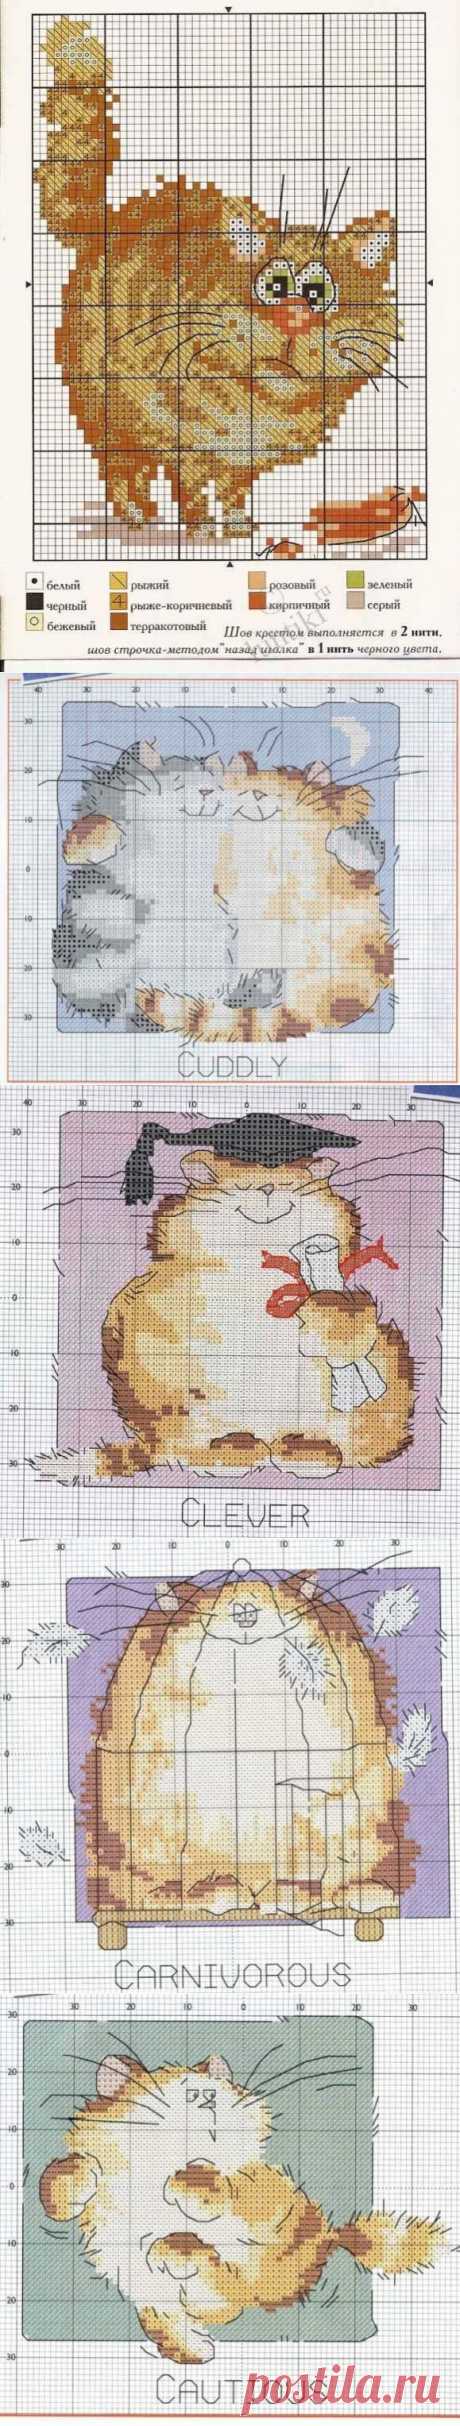 Простые схемы для вышивки крестом - Смешные кошки / Вышивка крестиком и бисером - схемы и хвастушки / Лунтики. Развиваем детей. Творчество и игрушки